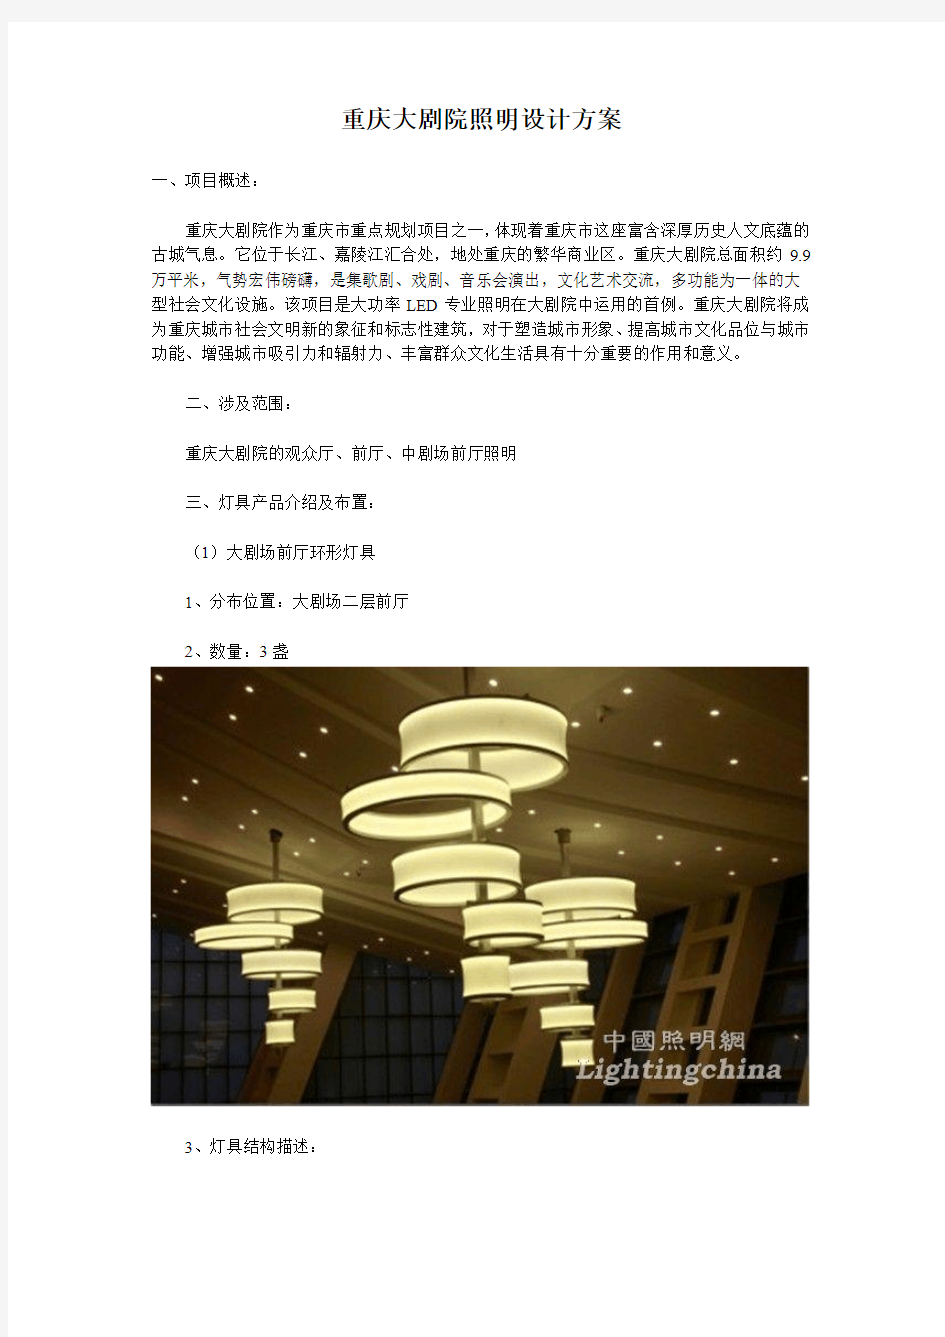 重庆大剧院照明设计方案